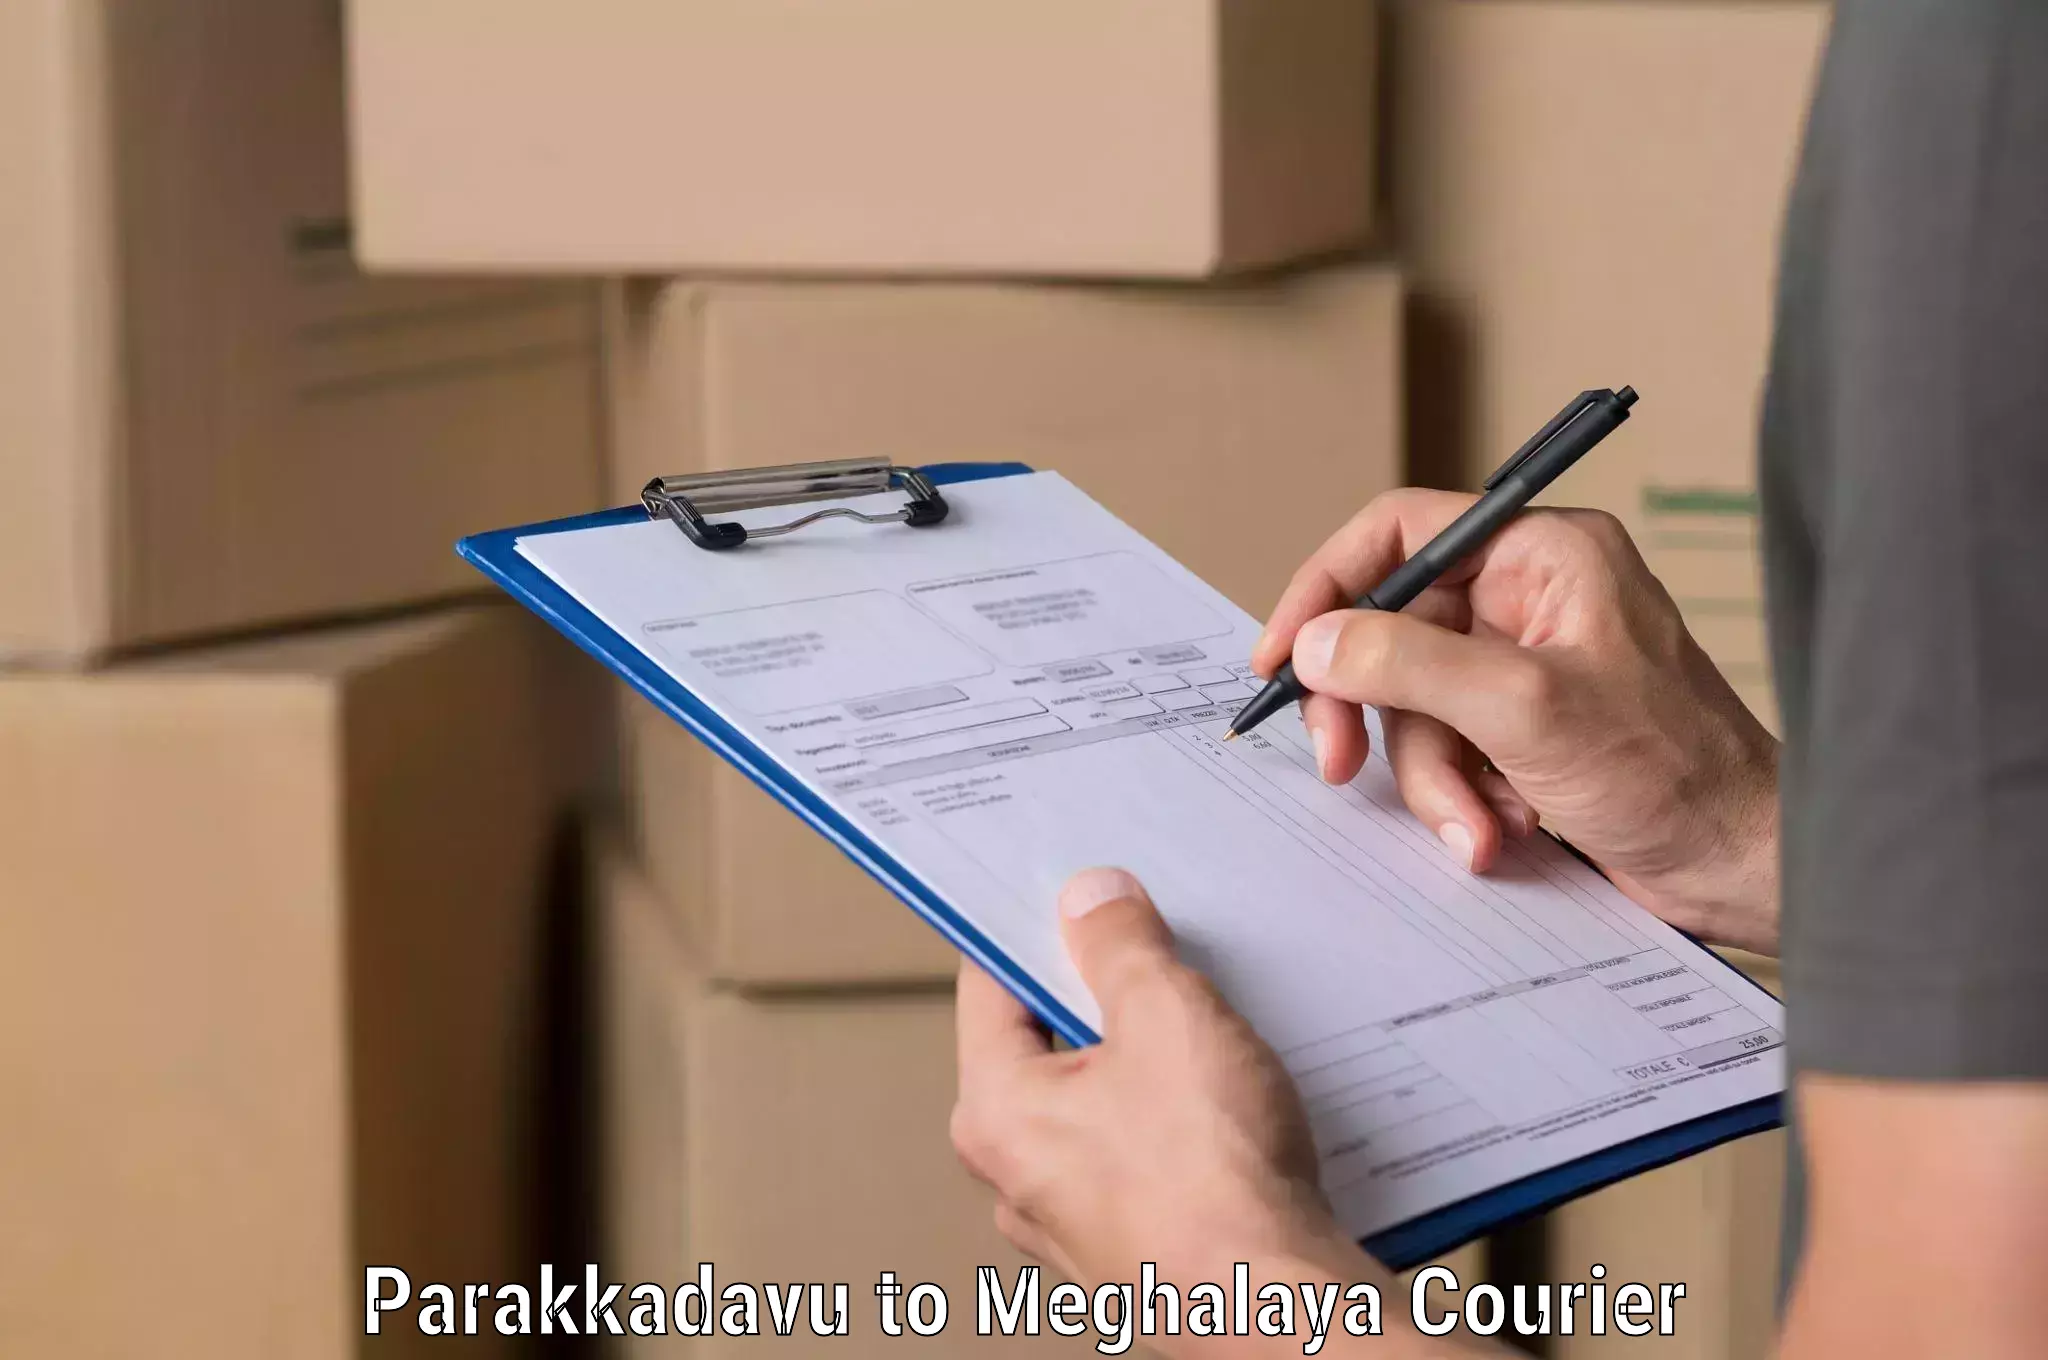 Fast shipping solutions Parakkadavu to Meghalaya